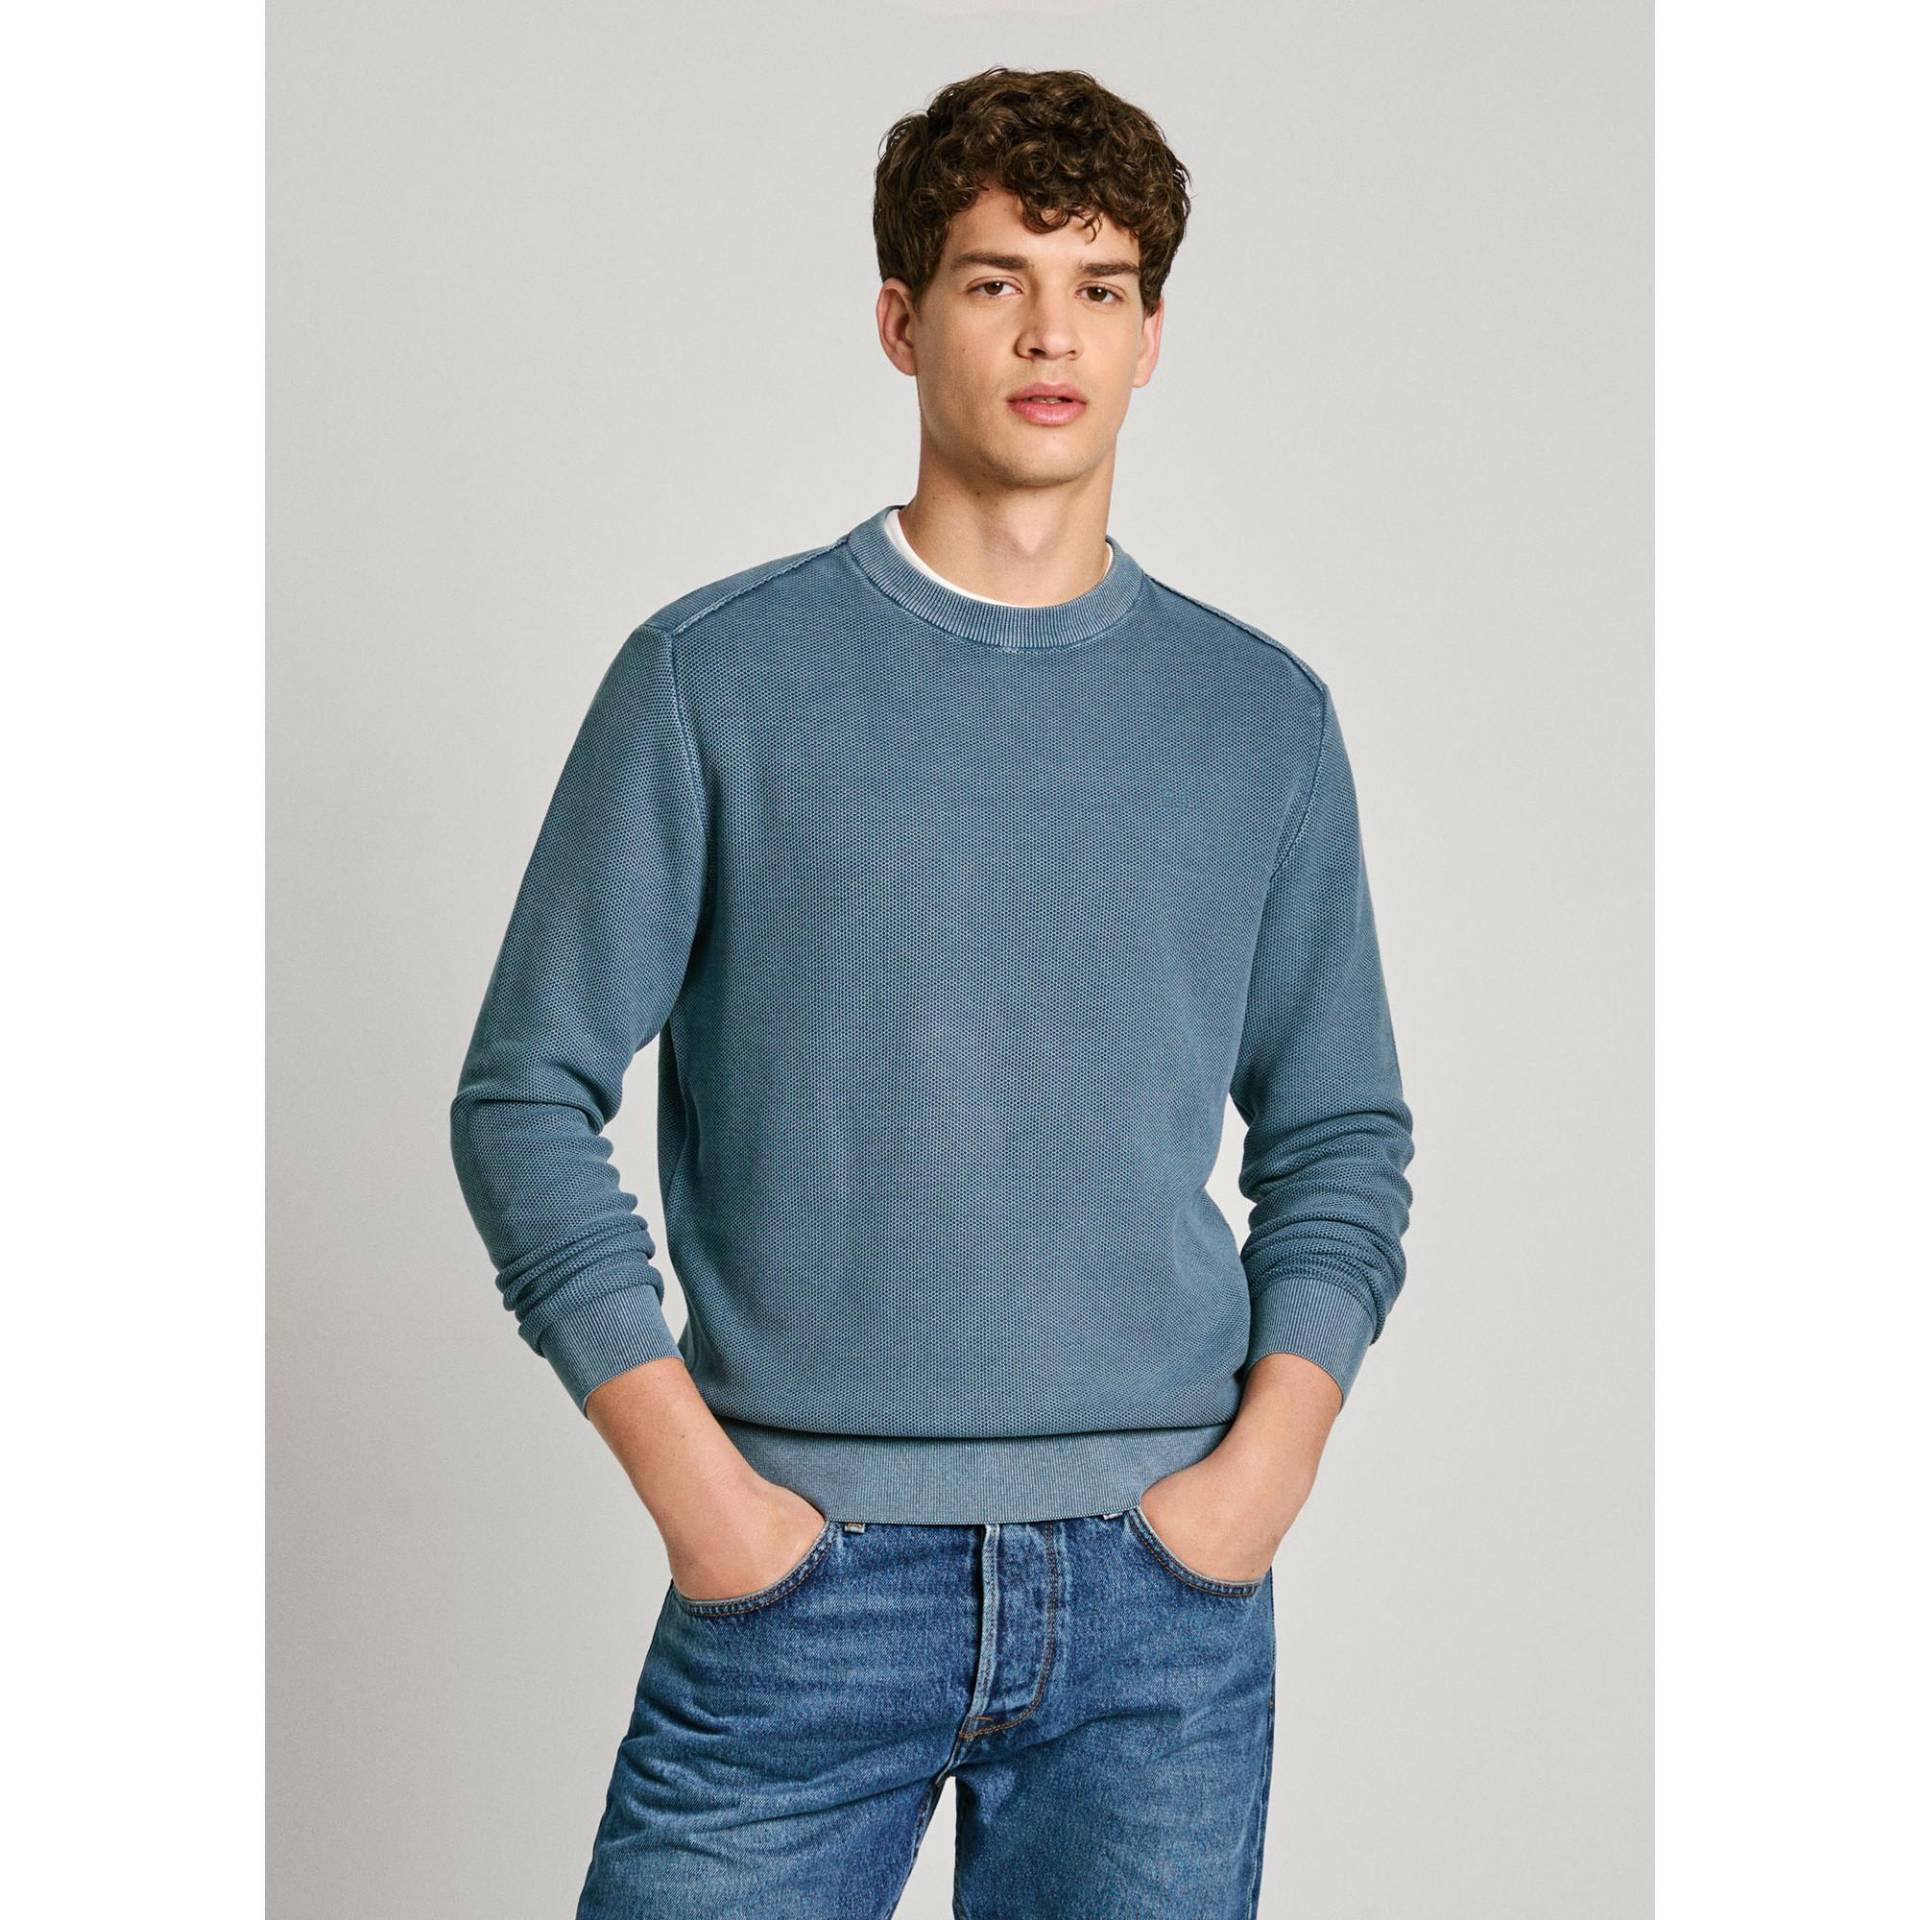 Pullover Herren Blau S von Pepe Jeans